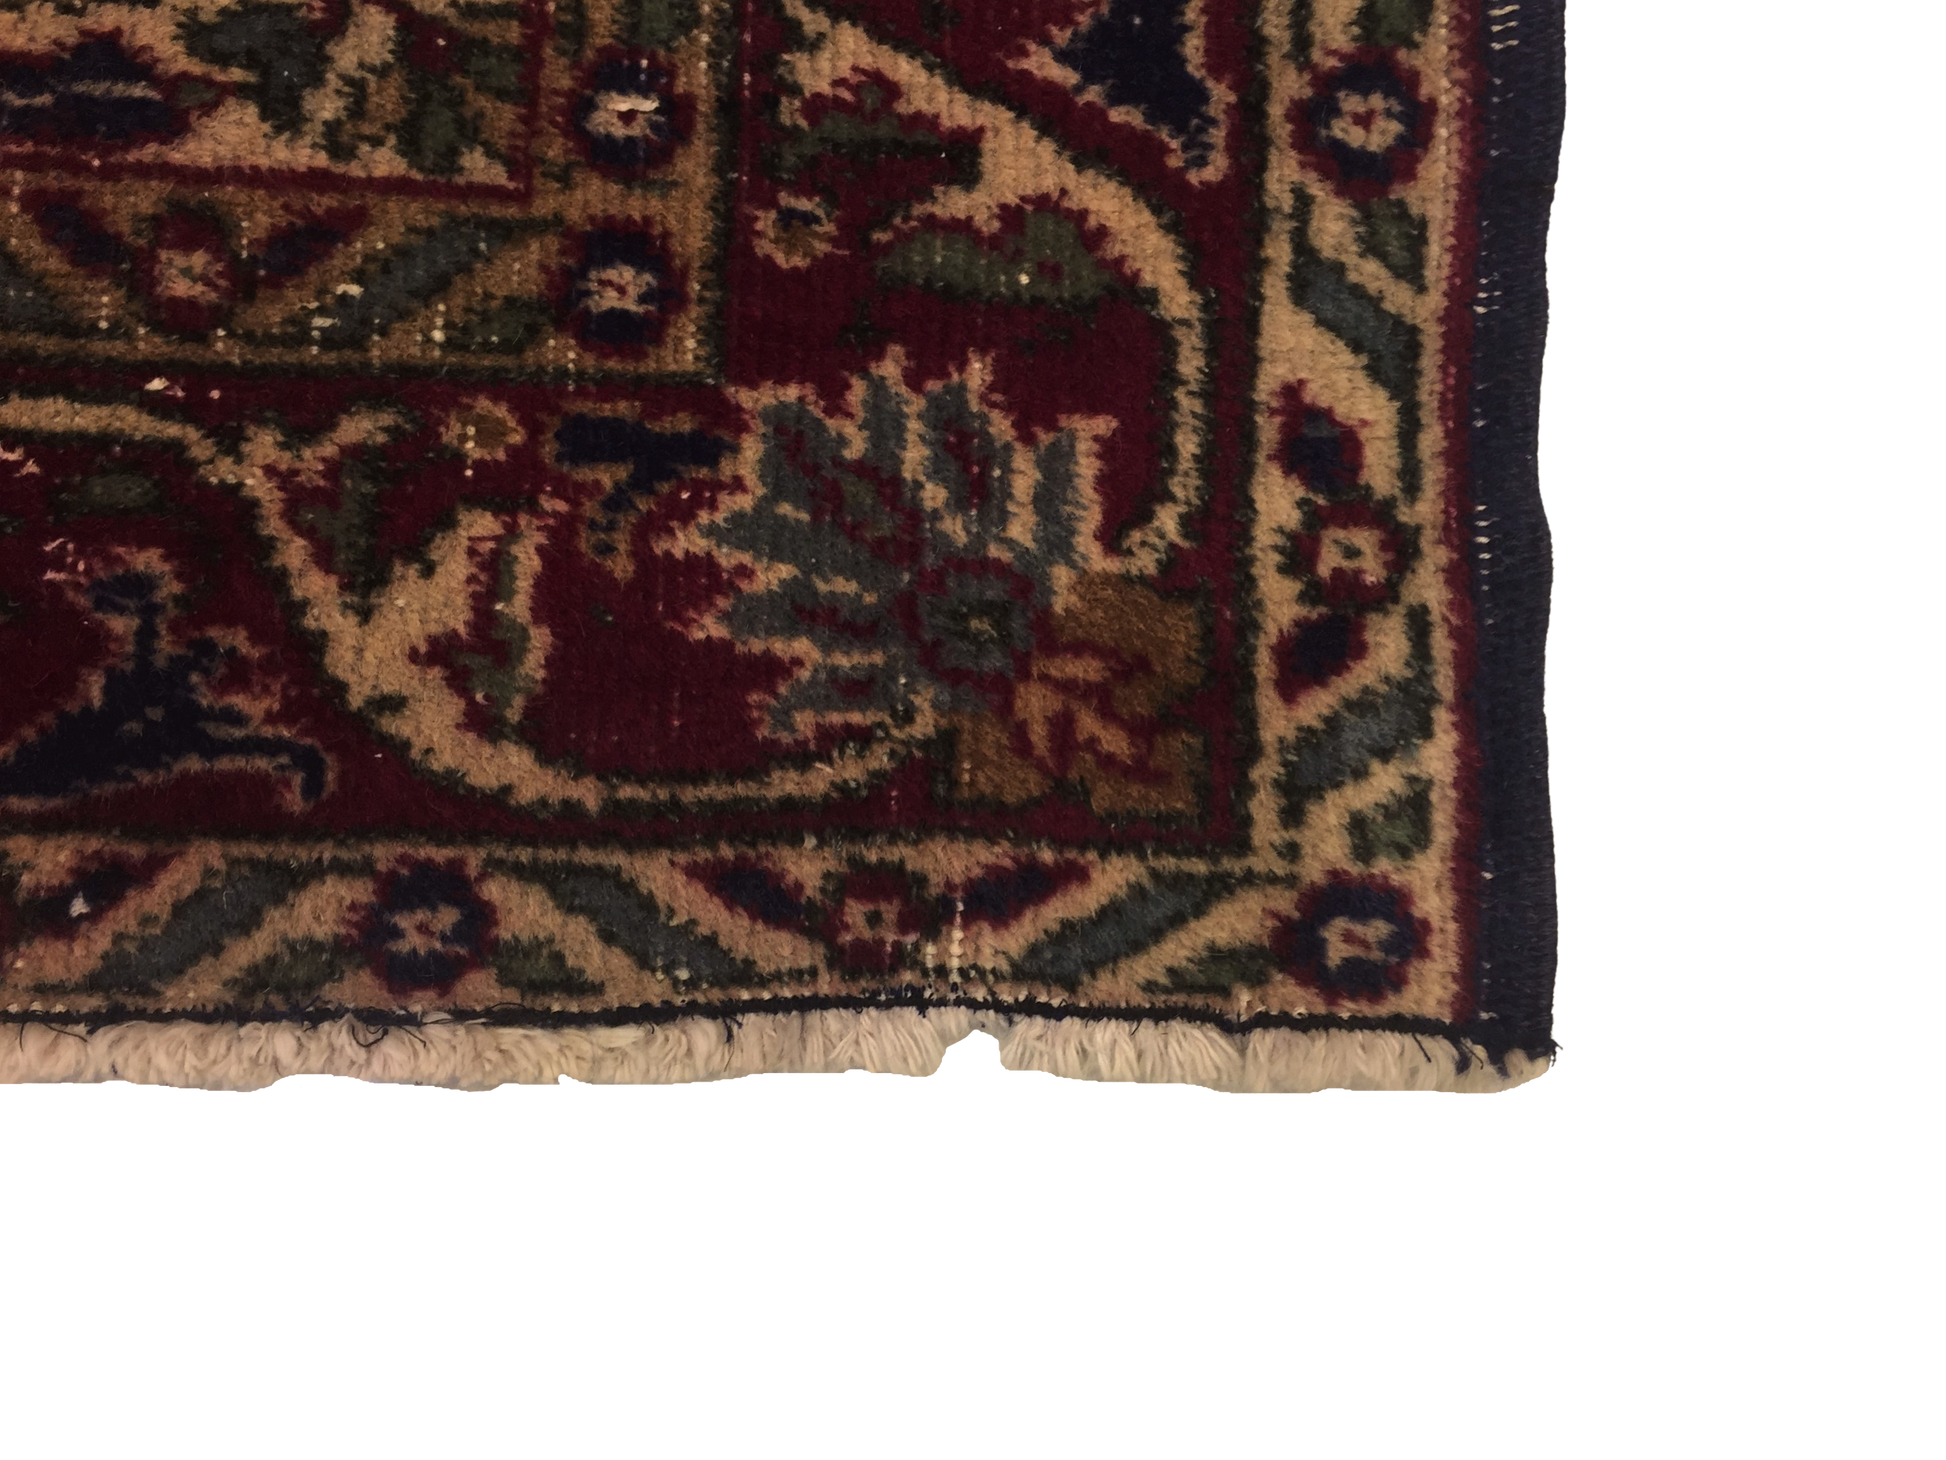 Classic Carpet 198 X 125 cm - Alfombras de Estambul -  Turkish Carpets - Alfombras de Estambul